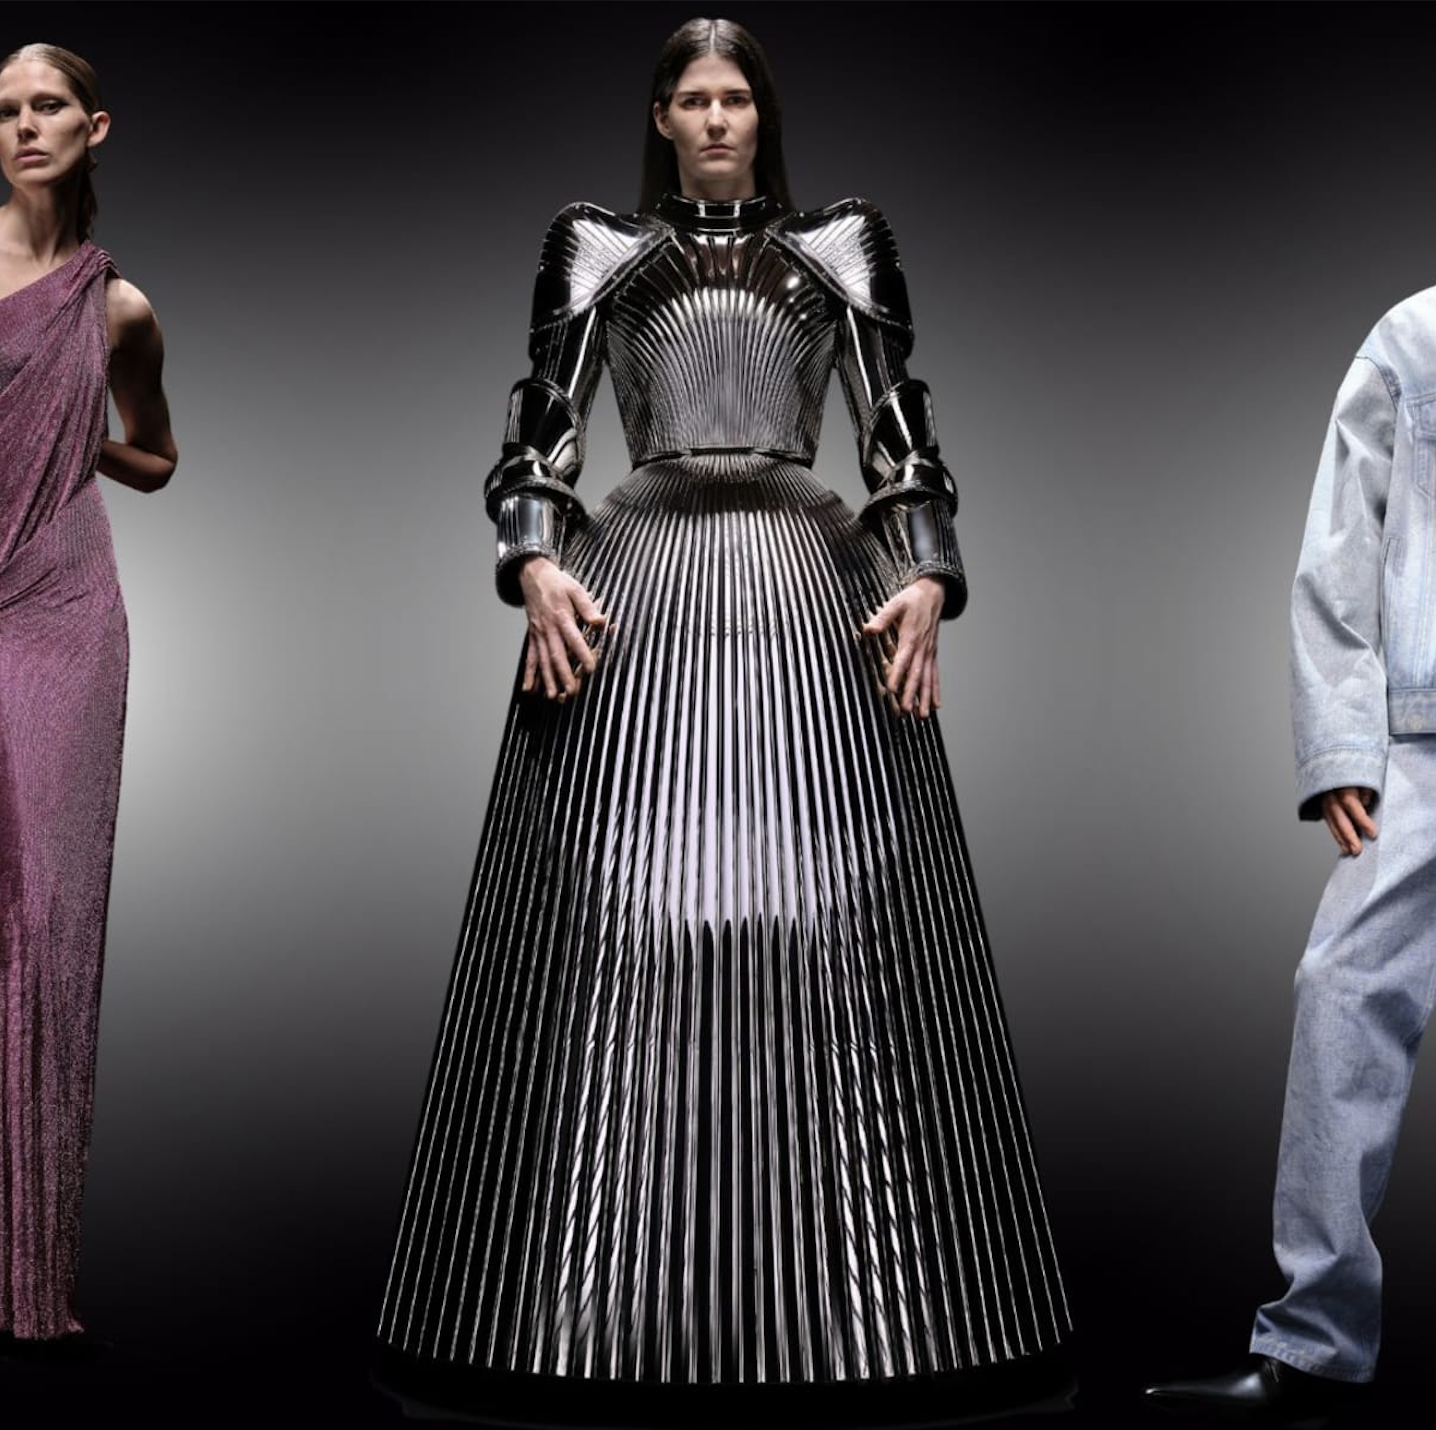 Balenciaga Debuts Spring 2022 Collection With Clones